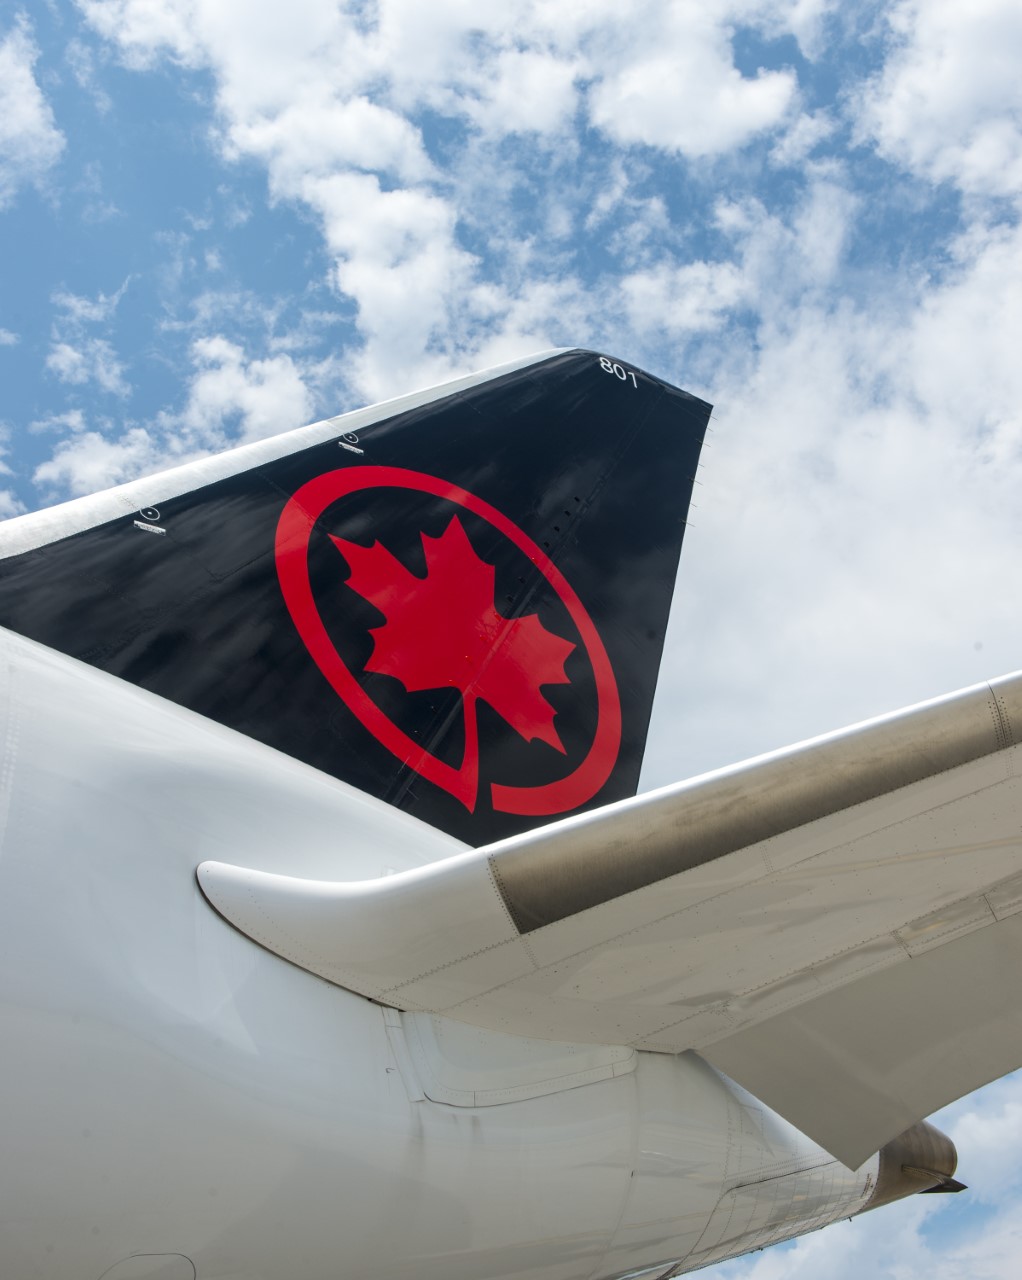 Air Canada winks at Italy – Italiavola & Travel